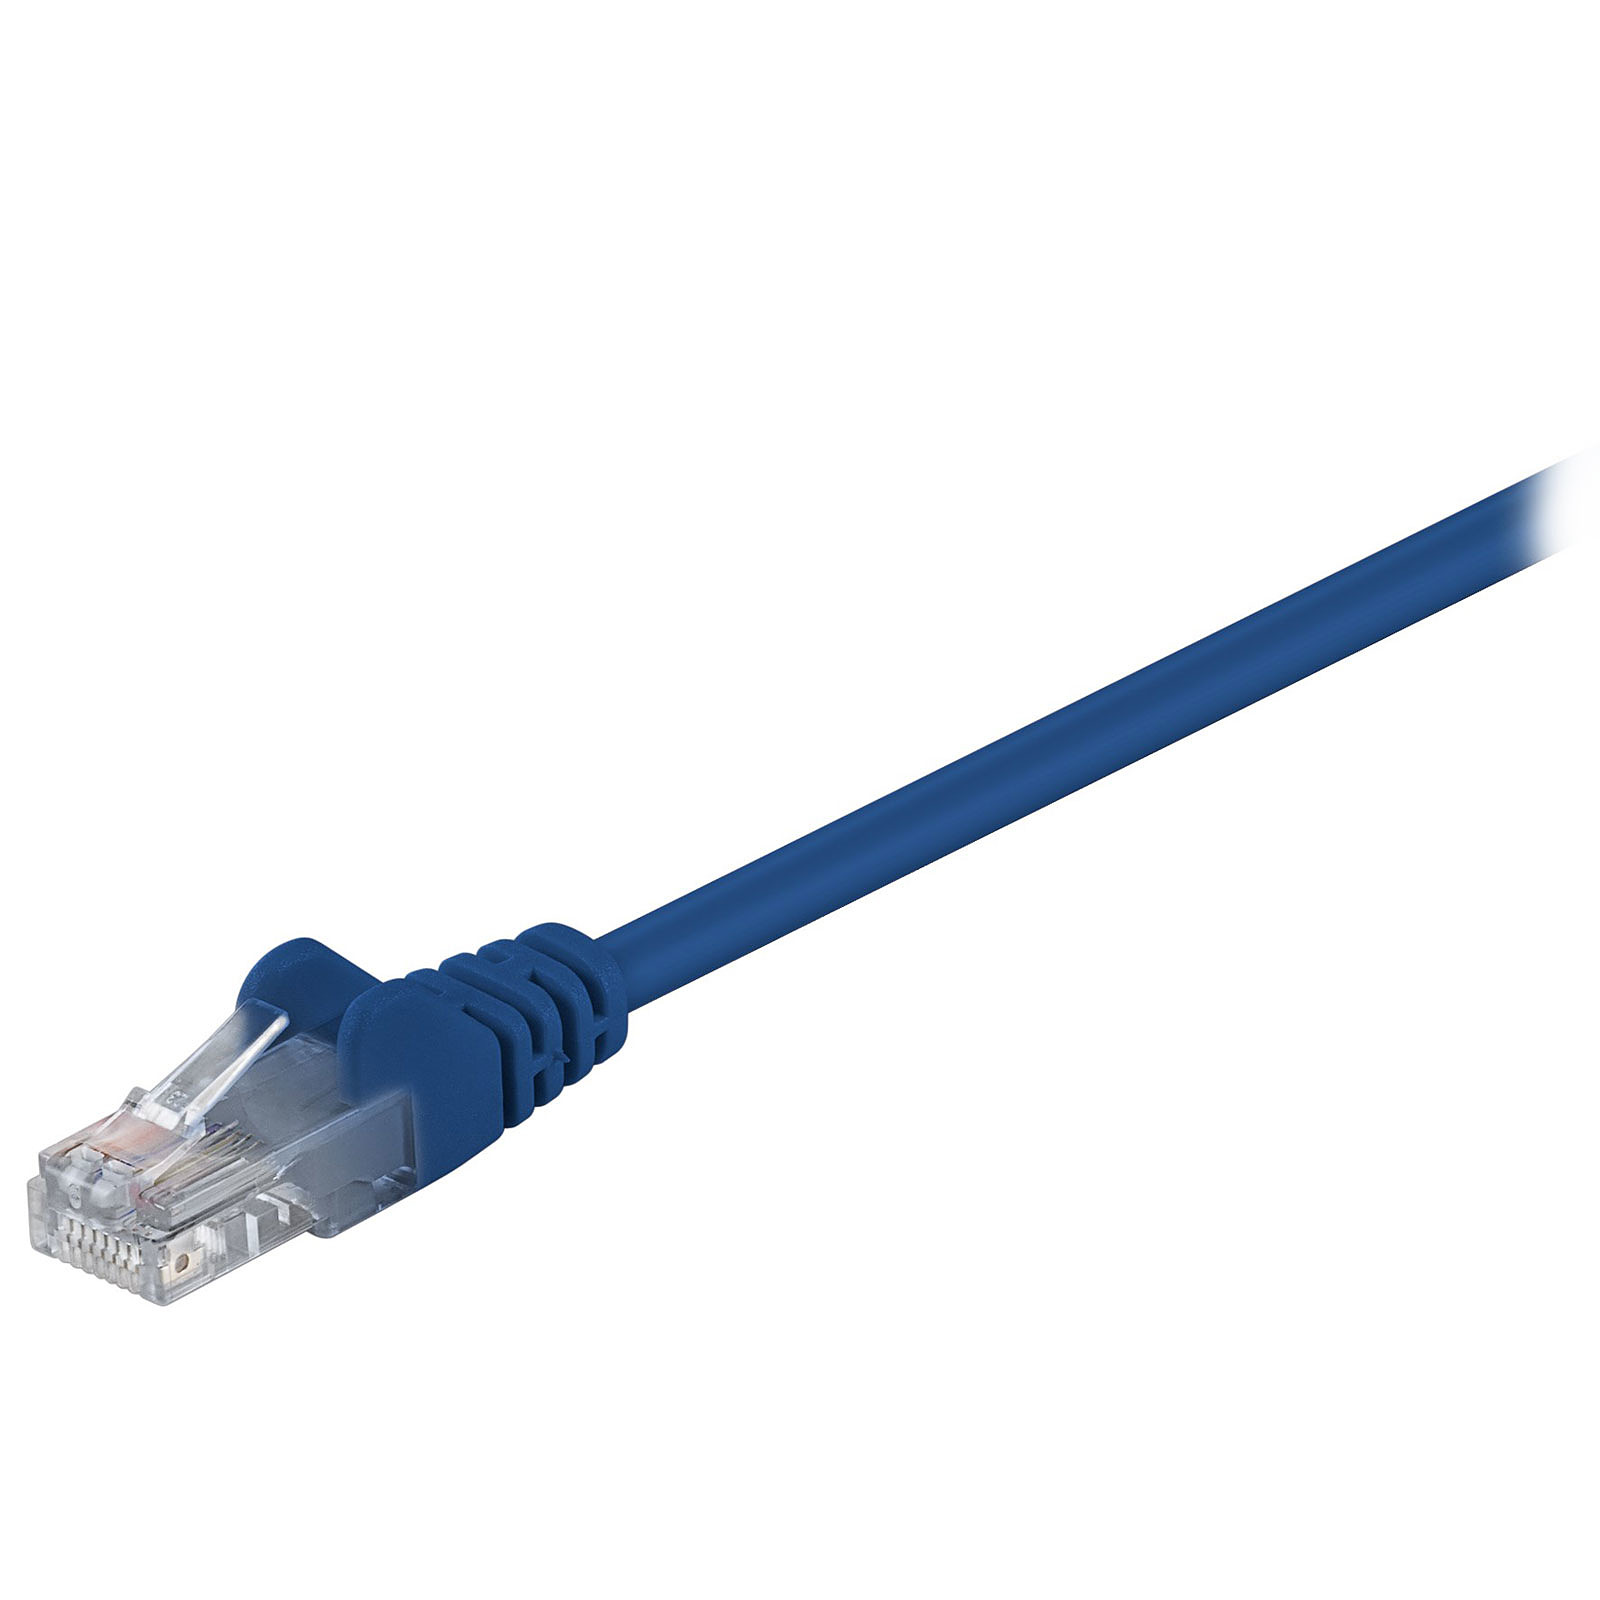 Cable RJ45 categorie 5e U/UTP 0.3 m (Bleu) - Cable RJ45 Generique